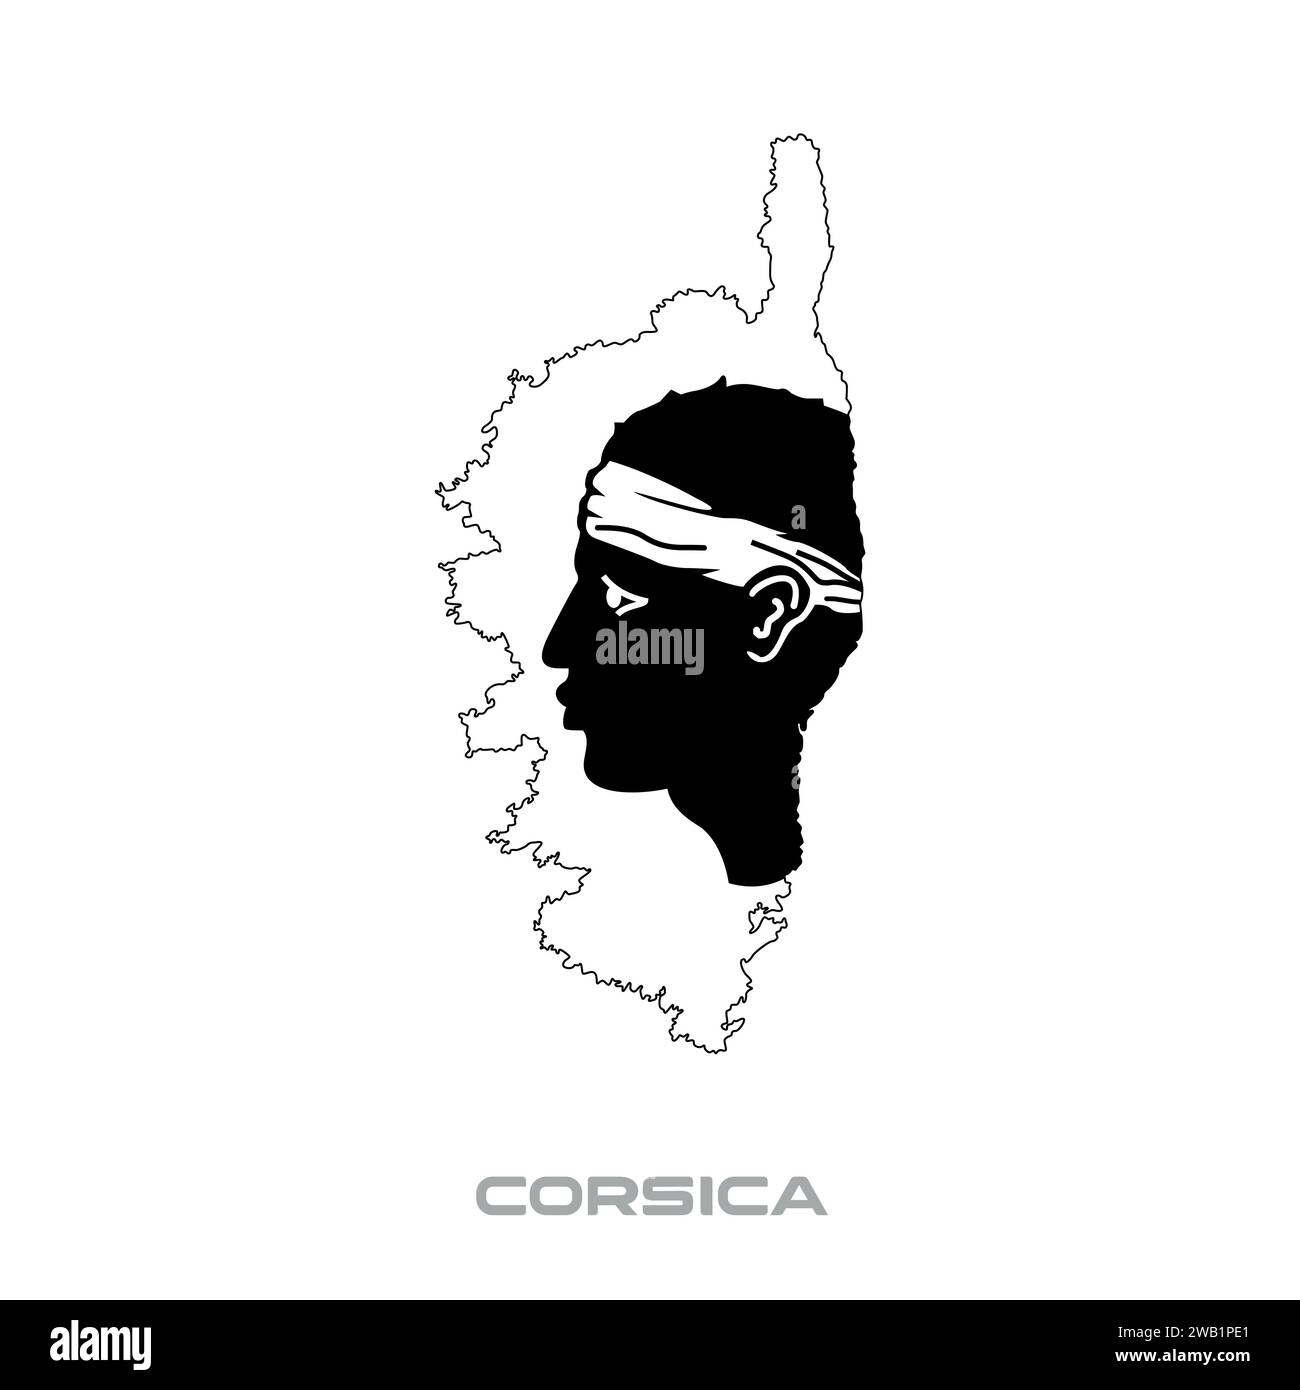 Illustrazione vettoriale della bandiera della Corsica con contorni neri su sfondo bianco Illustrazione Vettoriale